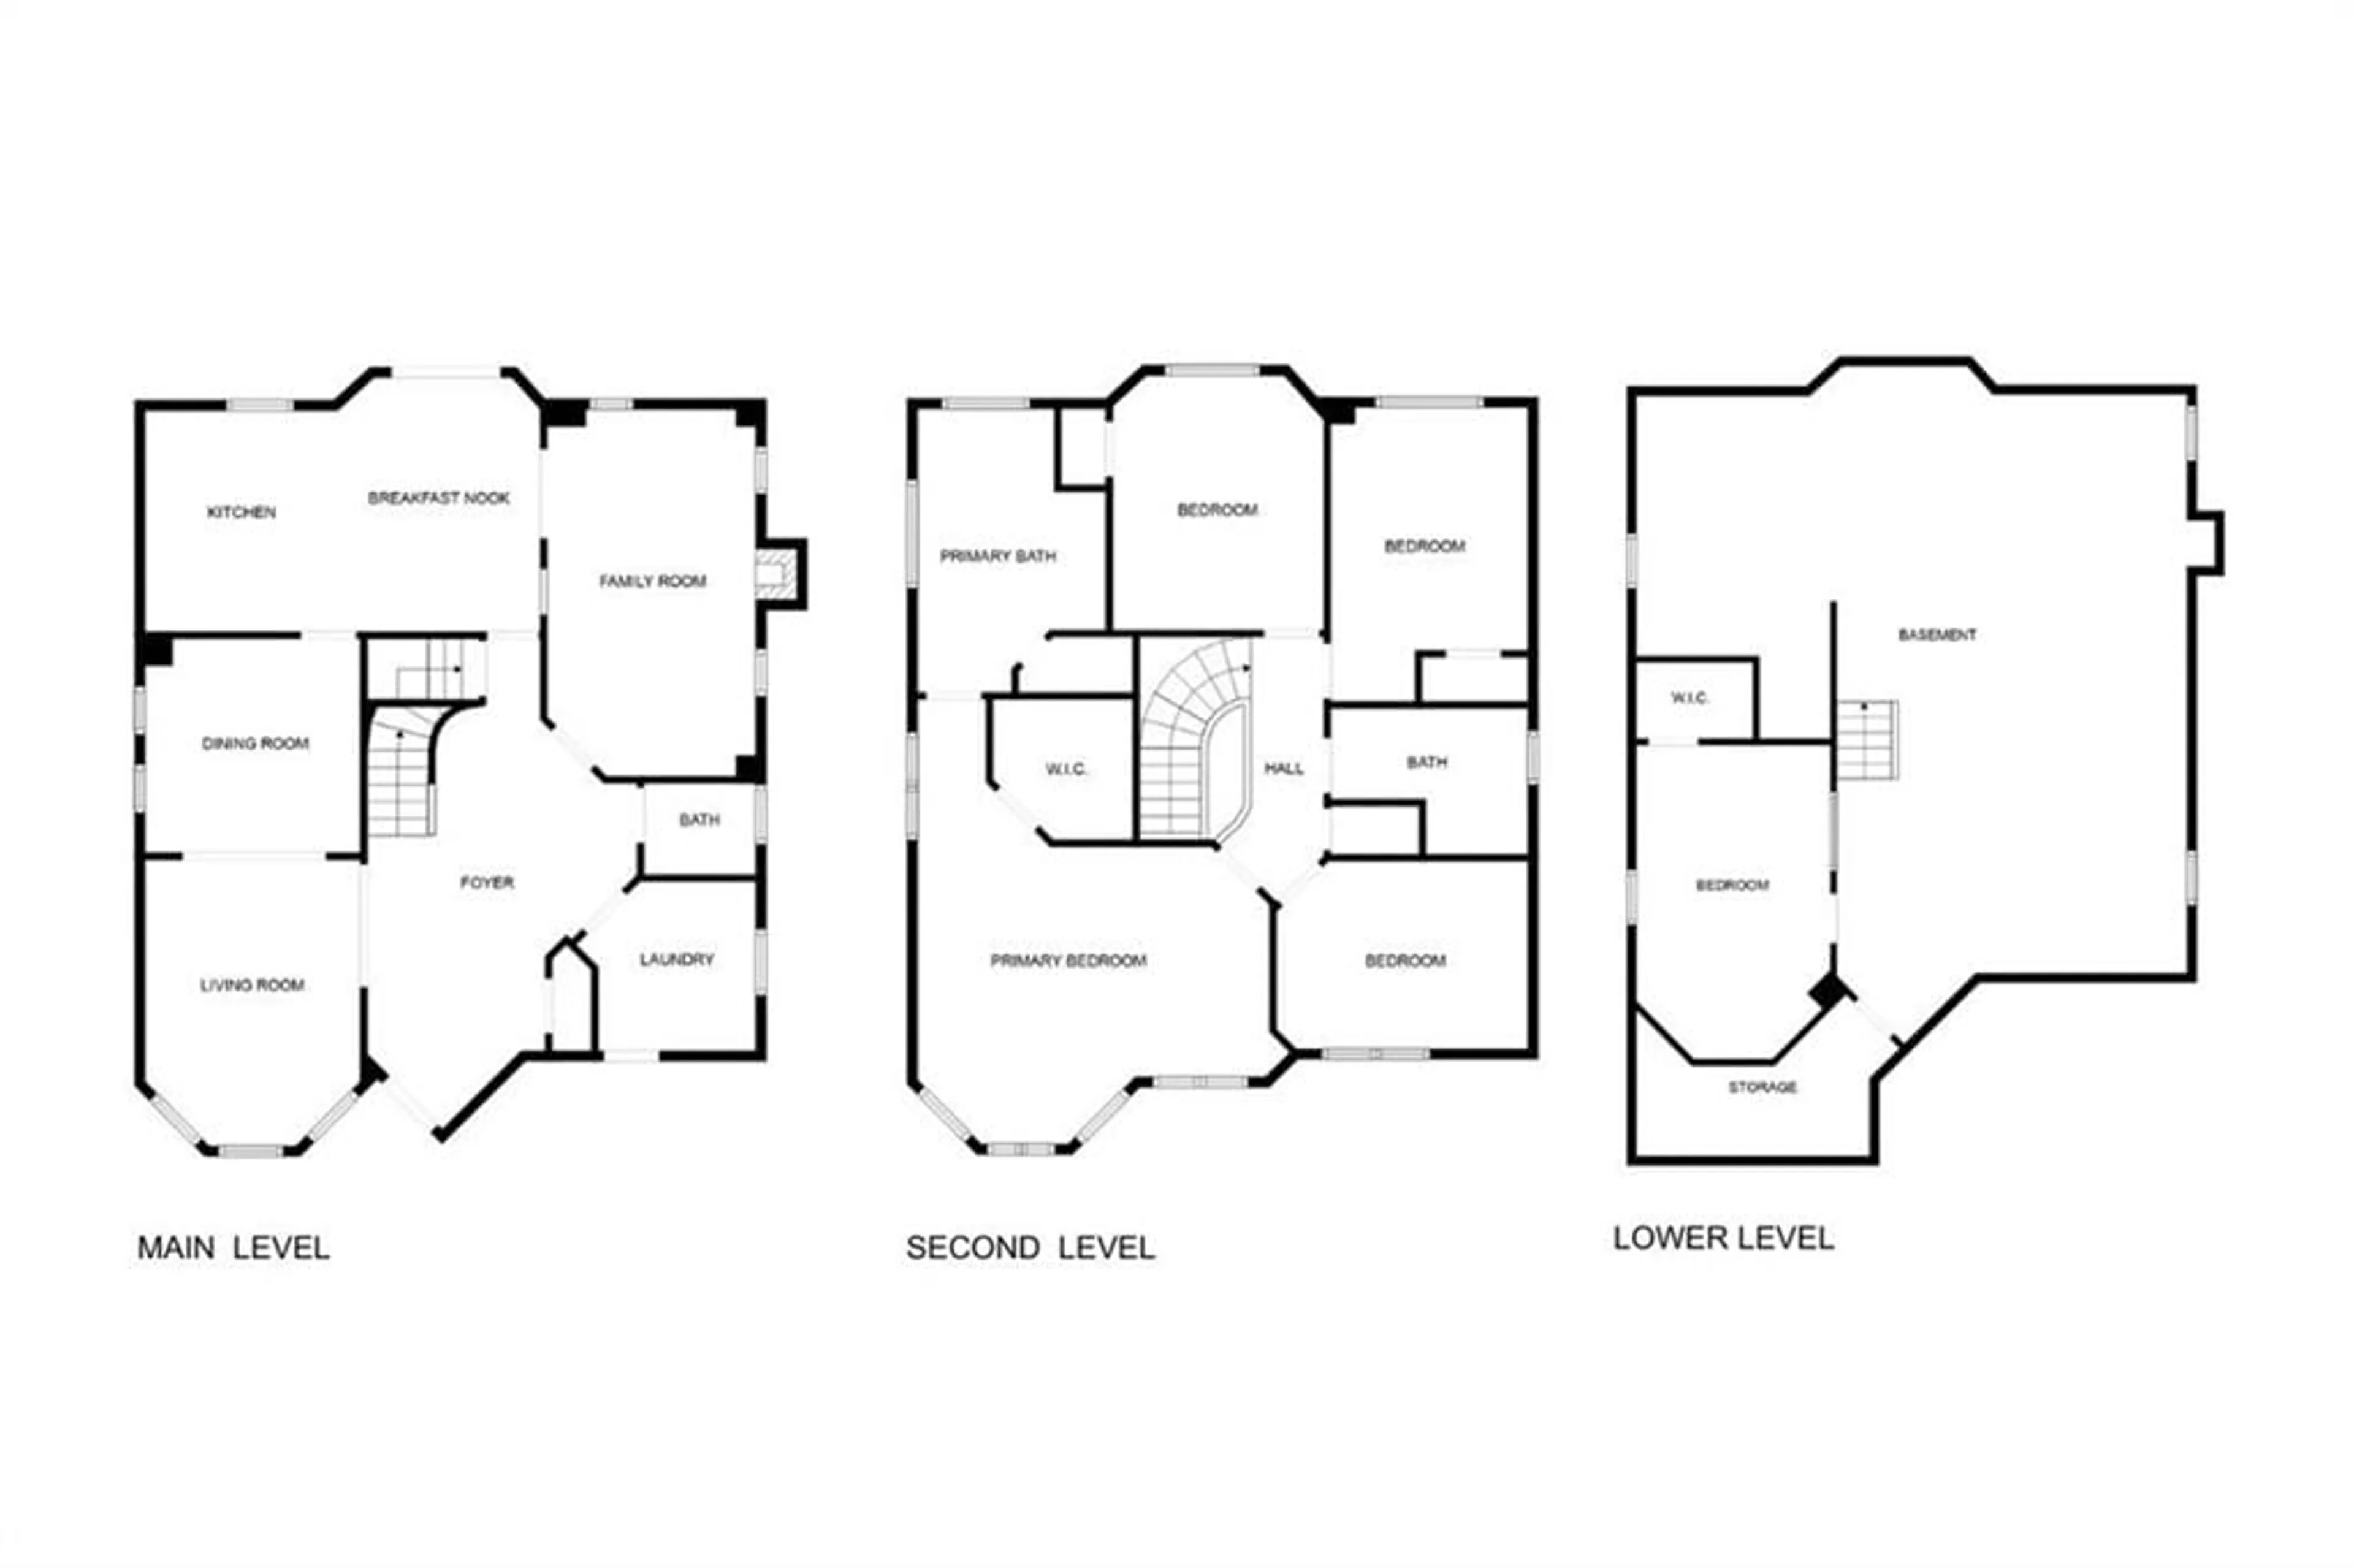 Floor plan for 21 Muir Dr, Barrie Ontario L4N 0J1